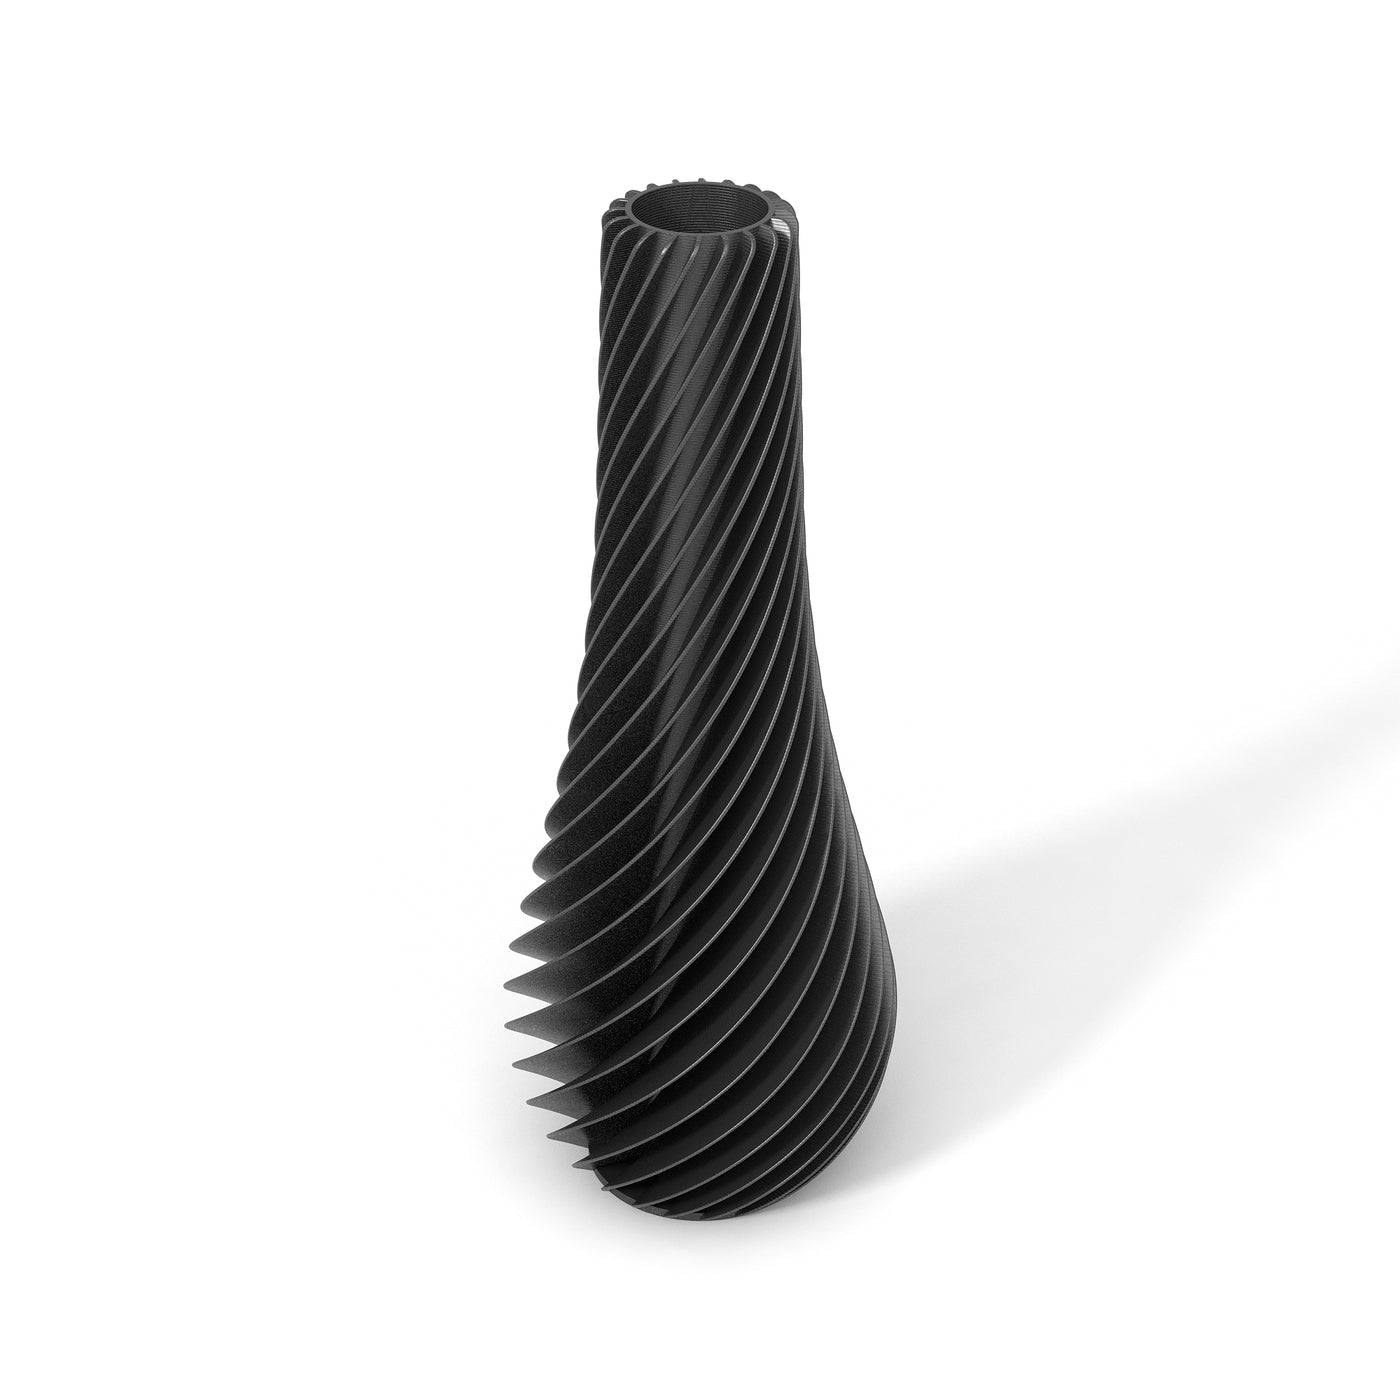 Černá designová váza 3D print SPIRAL 2